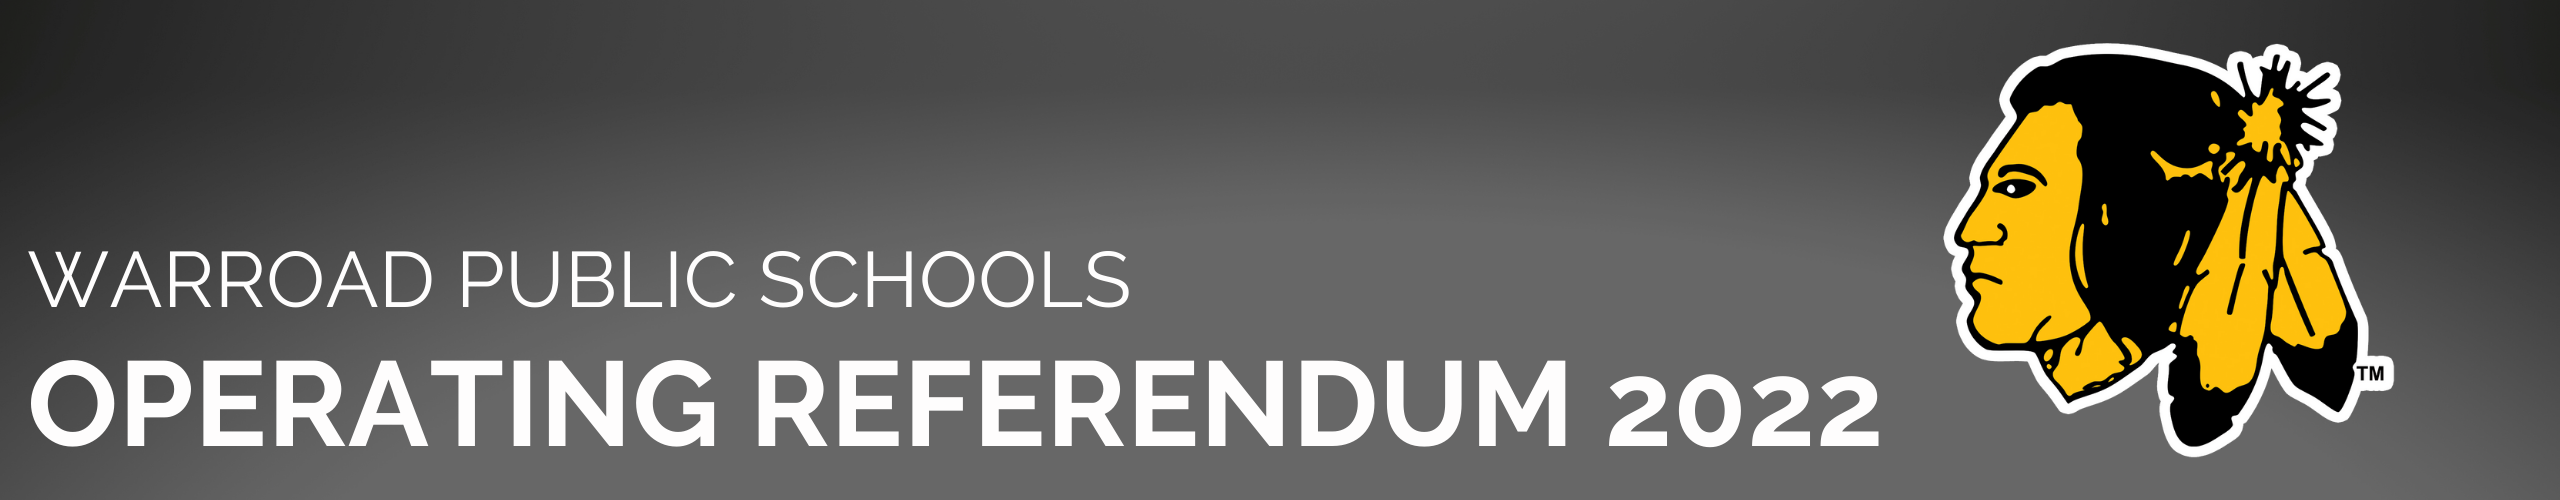 warroad public schools operating referendum 2022